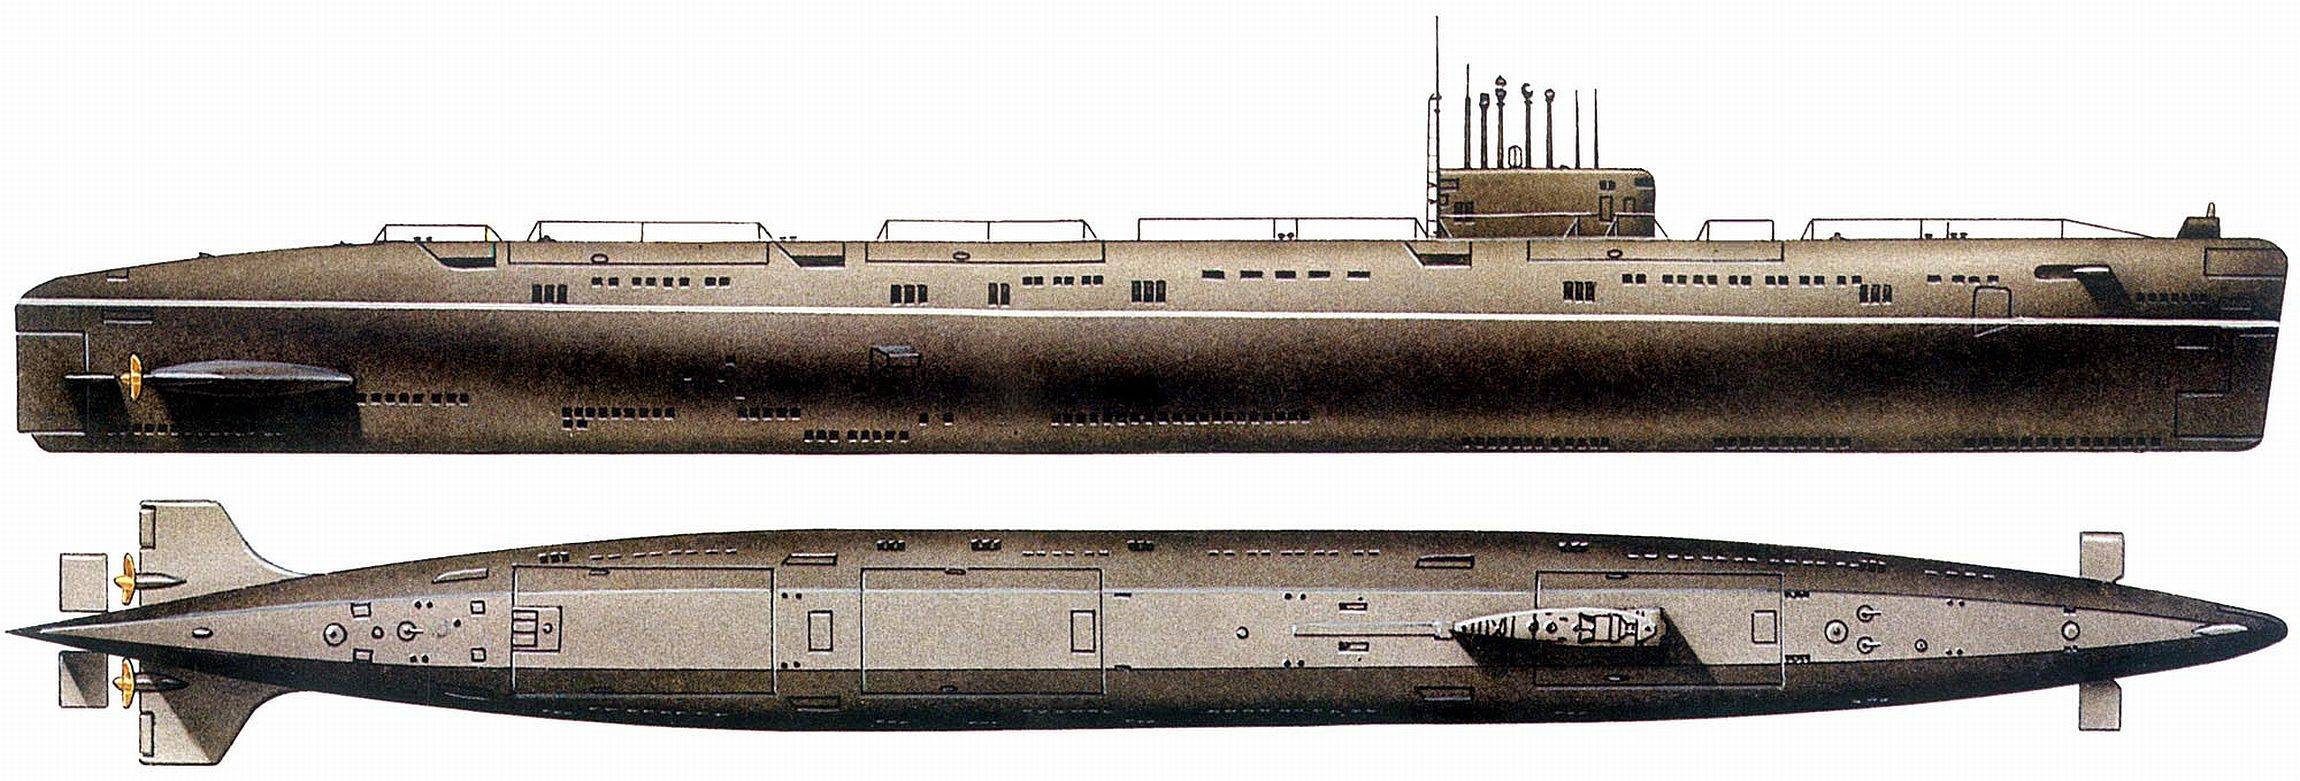 Самая большая в мире атомная подводная лодка «тайфун»